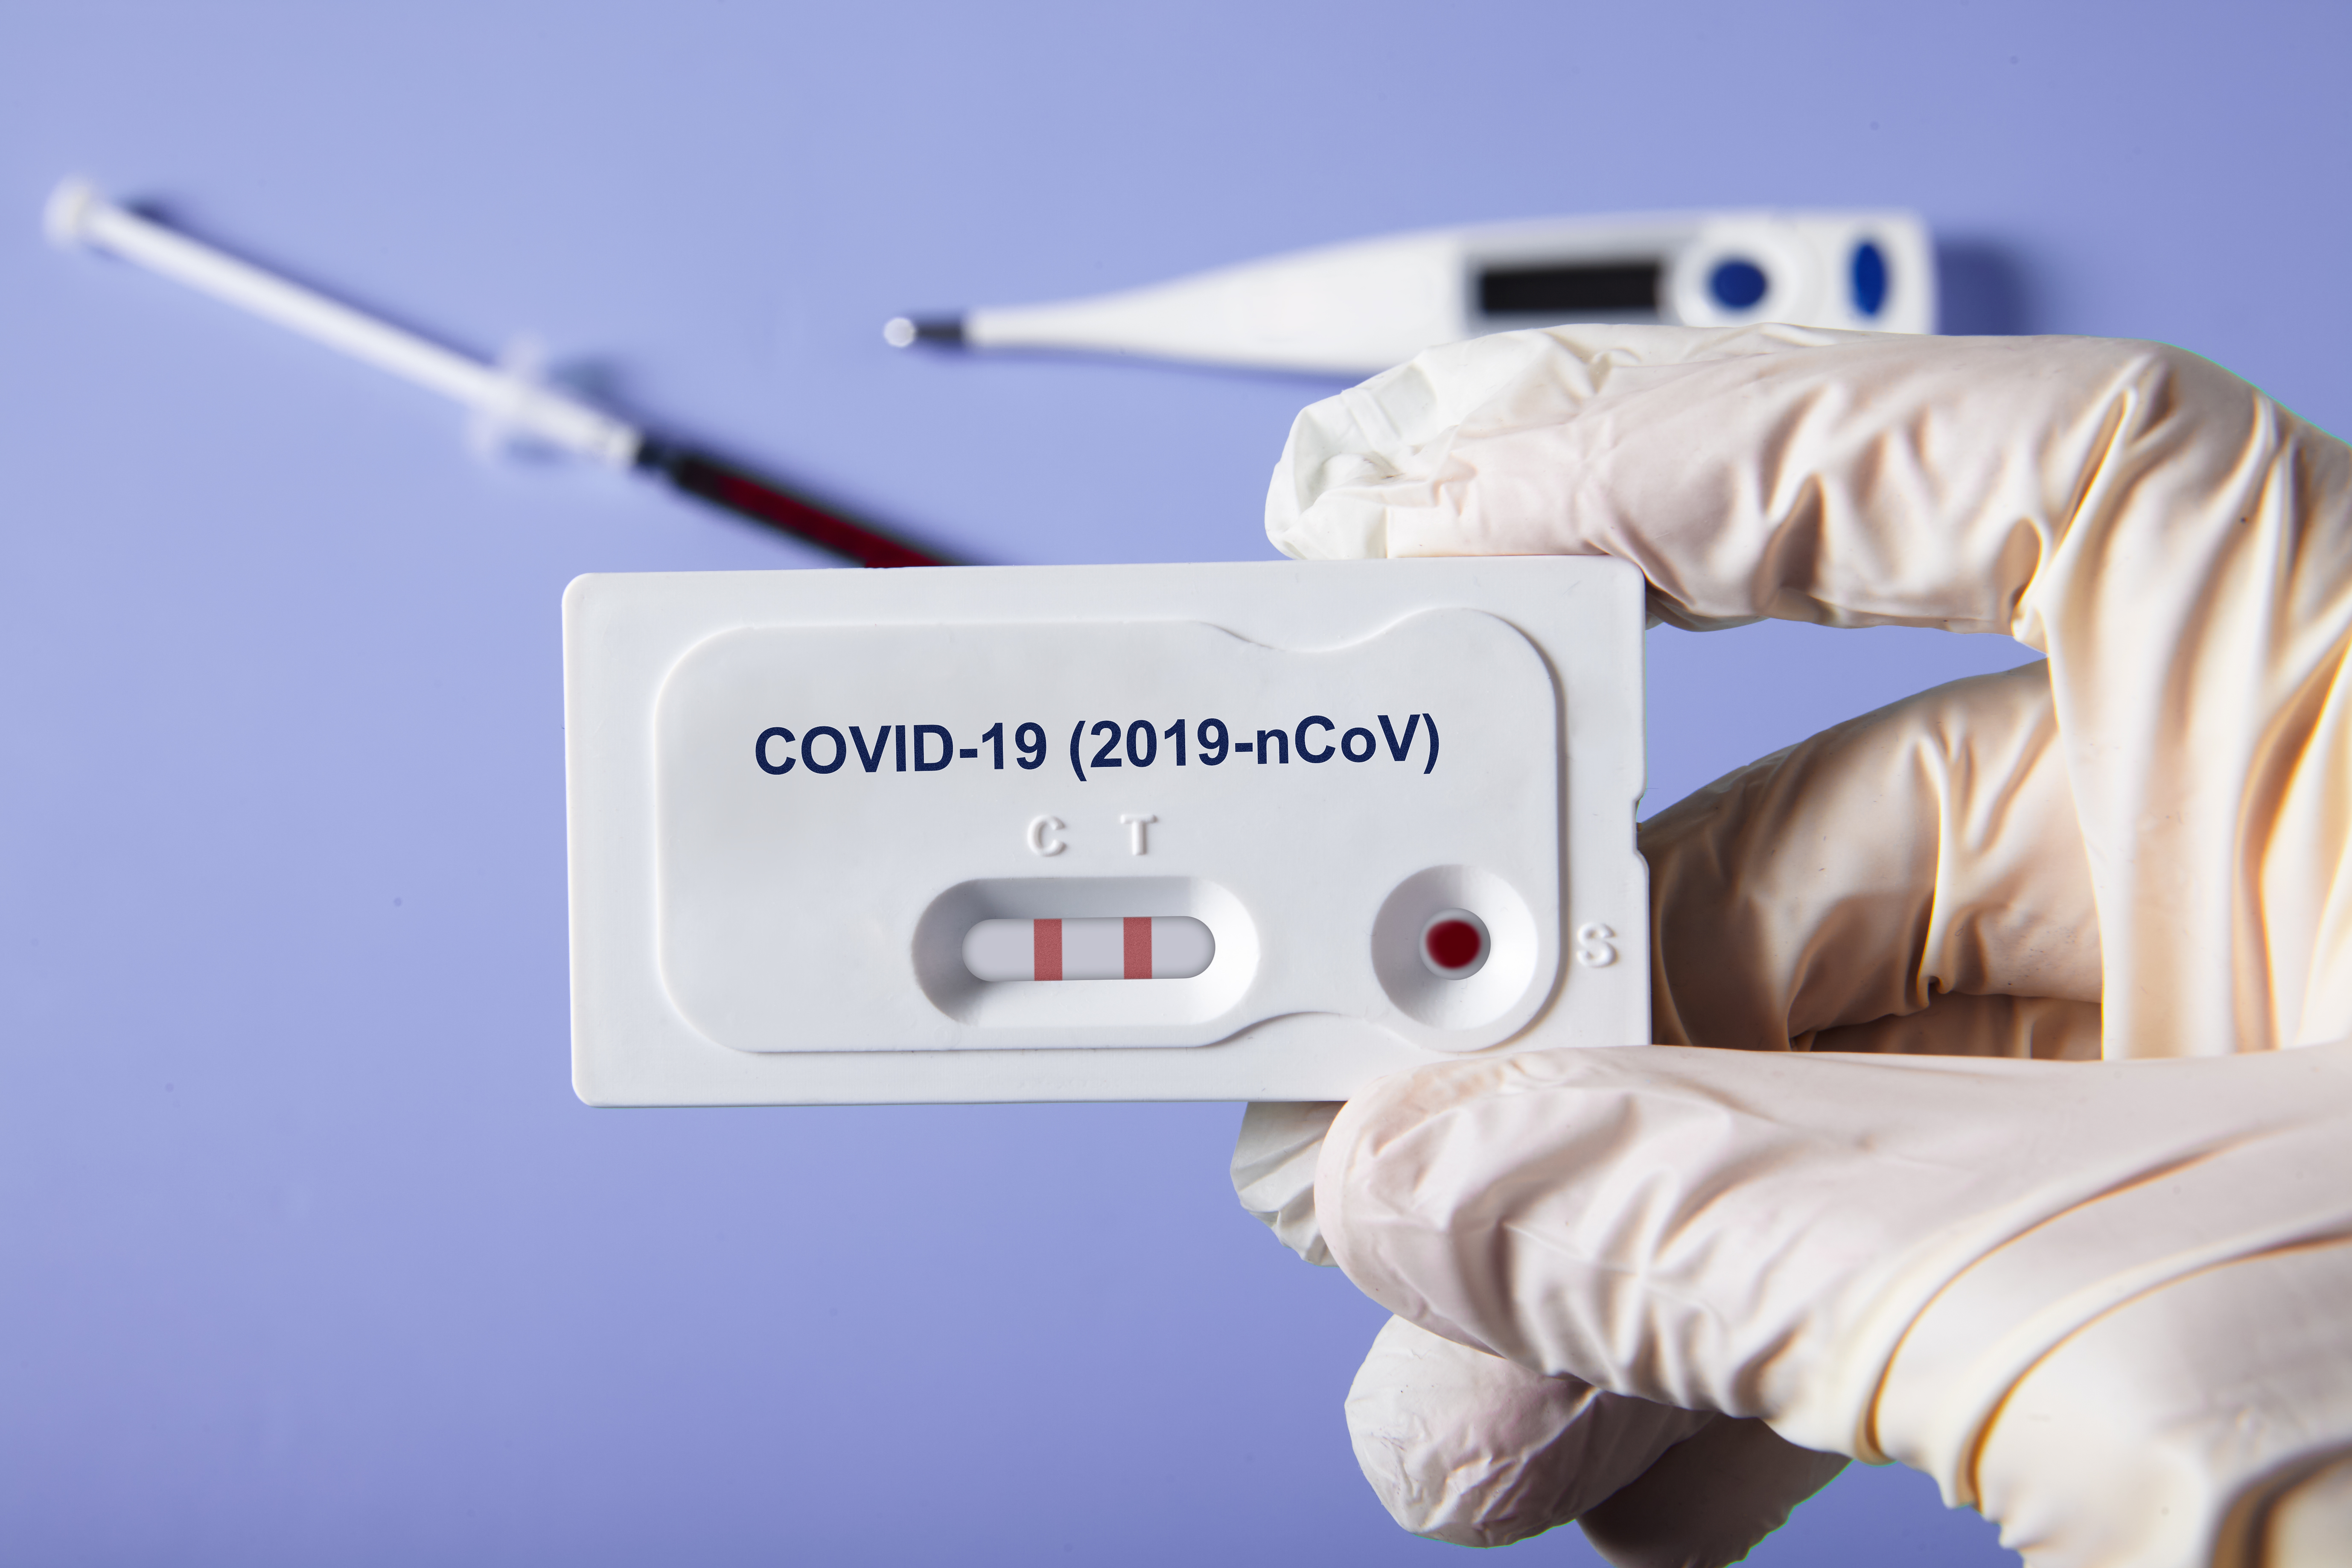     L'ARS ouvre un "Testodrome" pour renforcer l'accès au dépistage du covid-19

